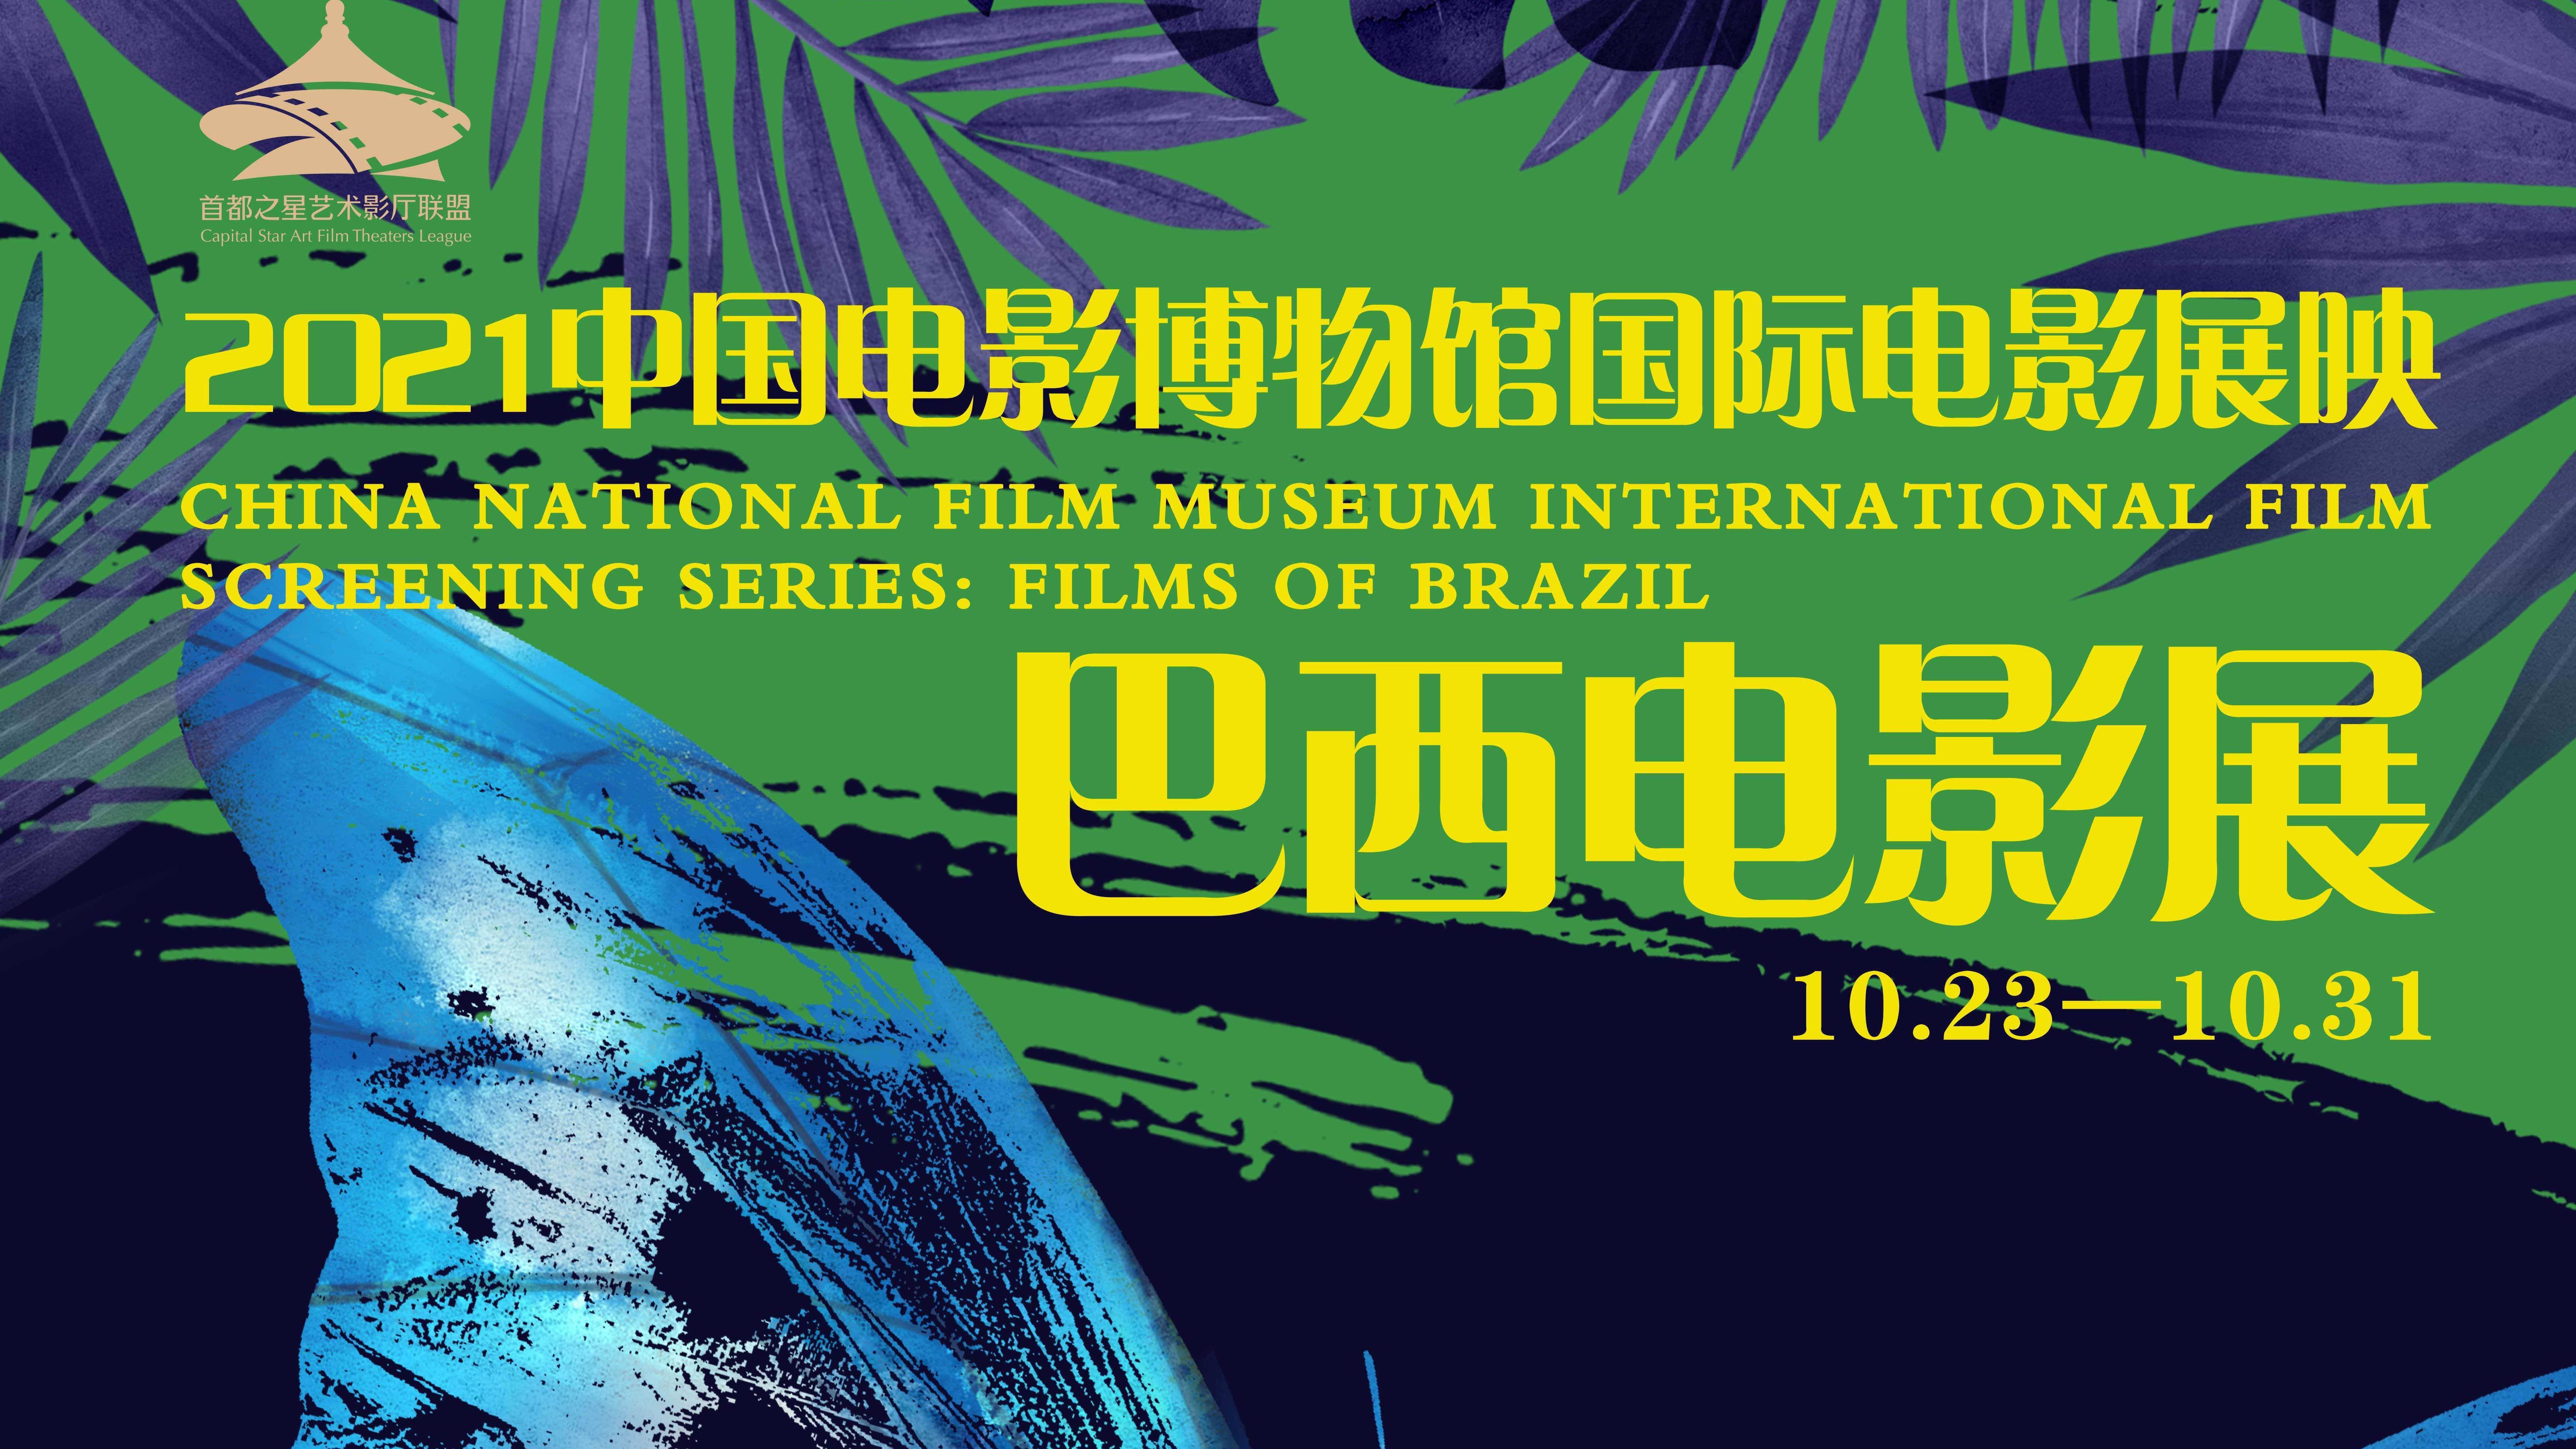 来影院感受桑巴风情吧！“巴西电影展”10月23日亮相中国电影博物馆